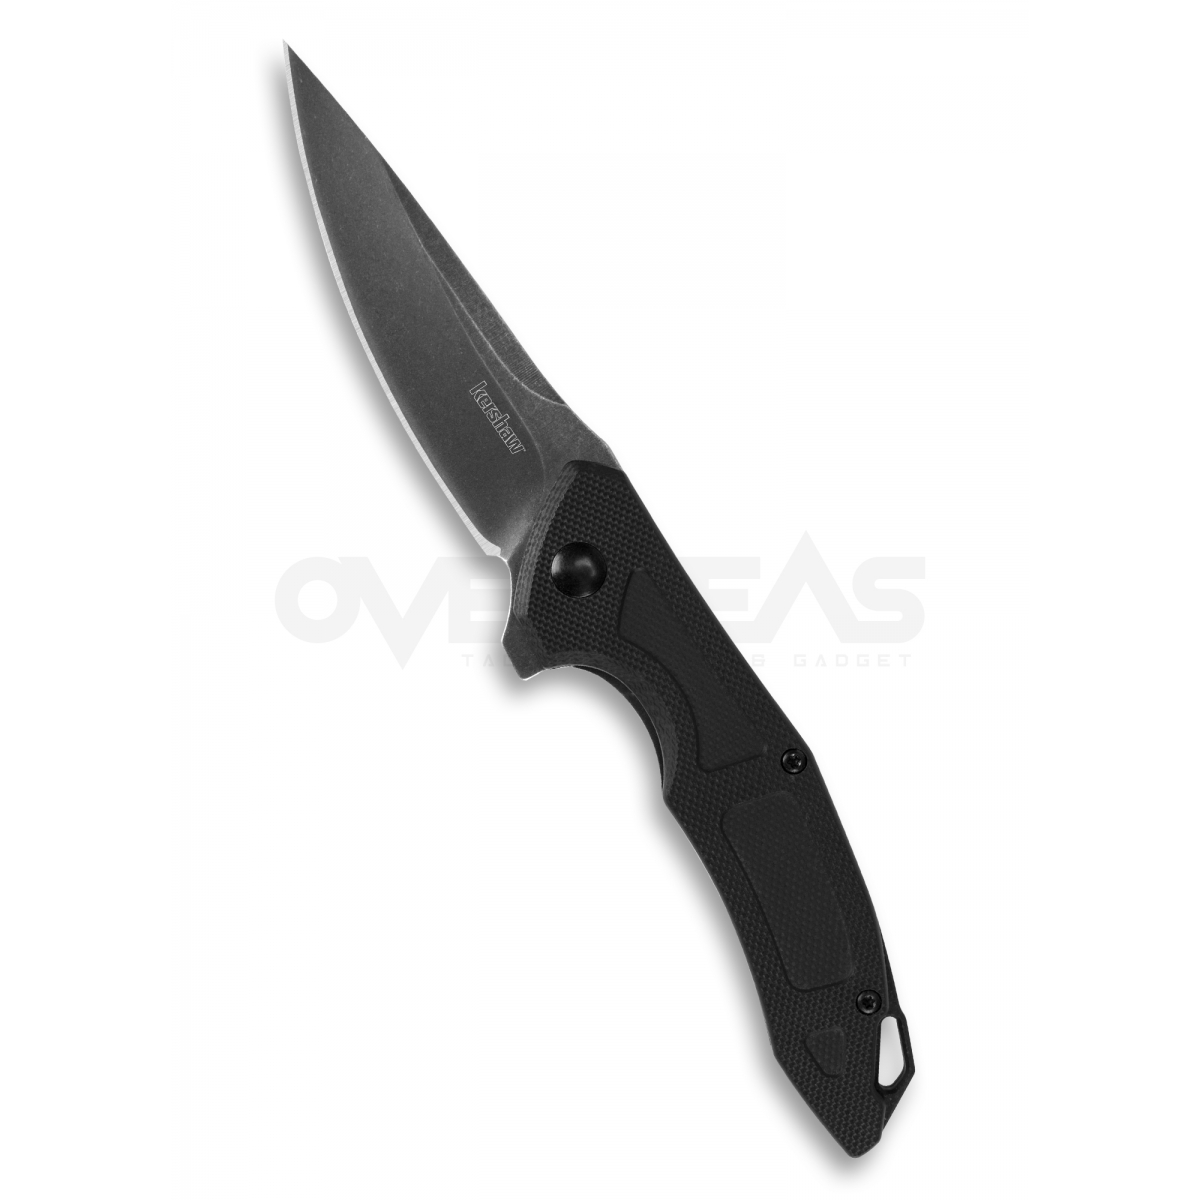 มีดพับ Kershaw Anso Method Liner Lock Knife Black G-10 (8Cr13Mov 3" Blackwash),1170